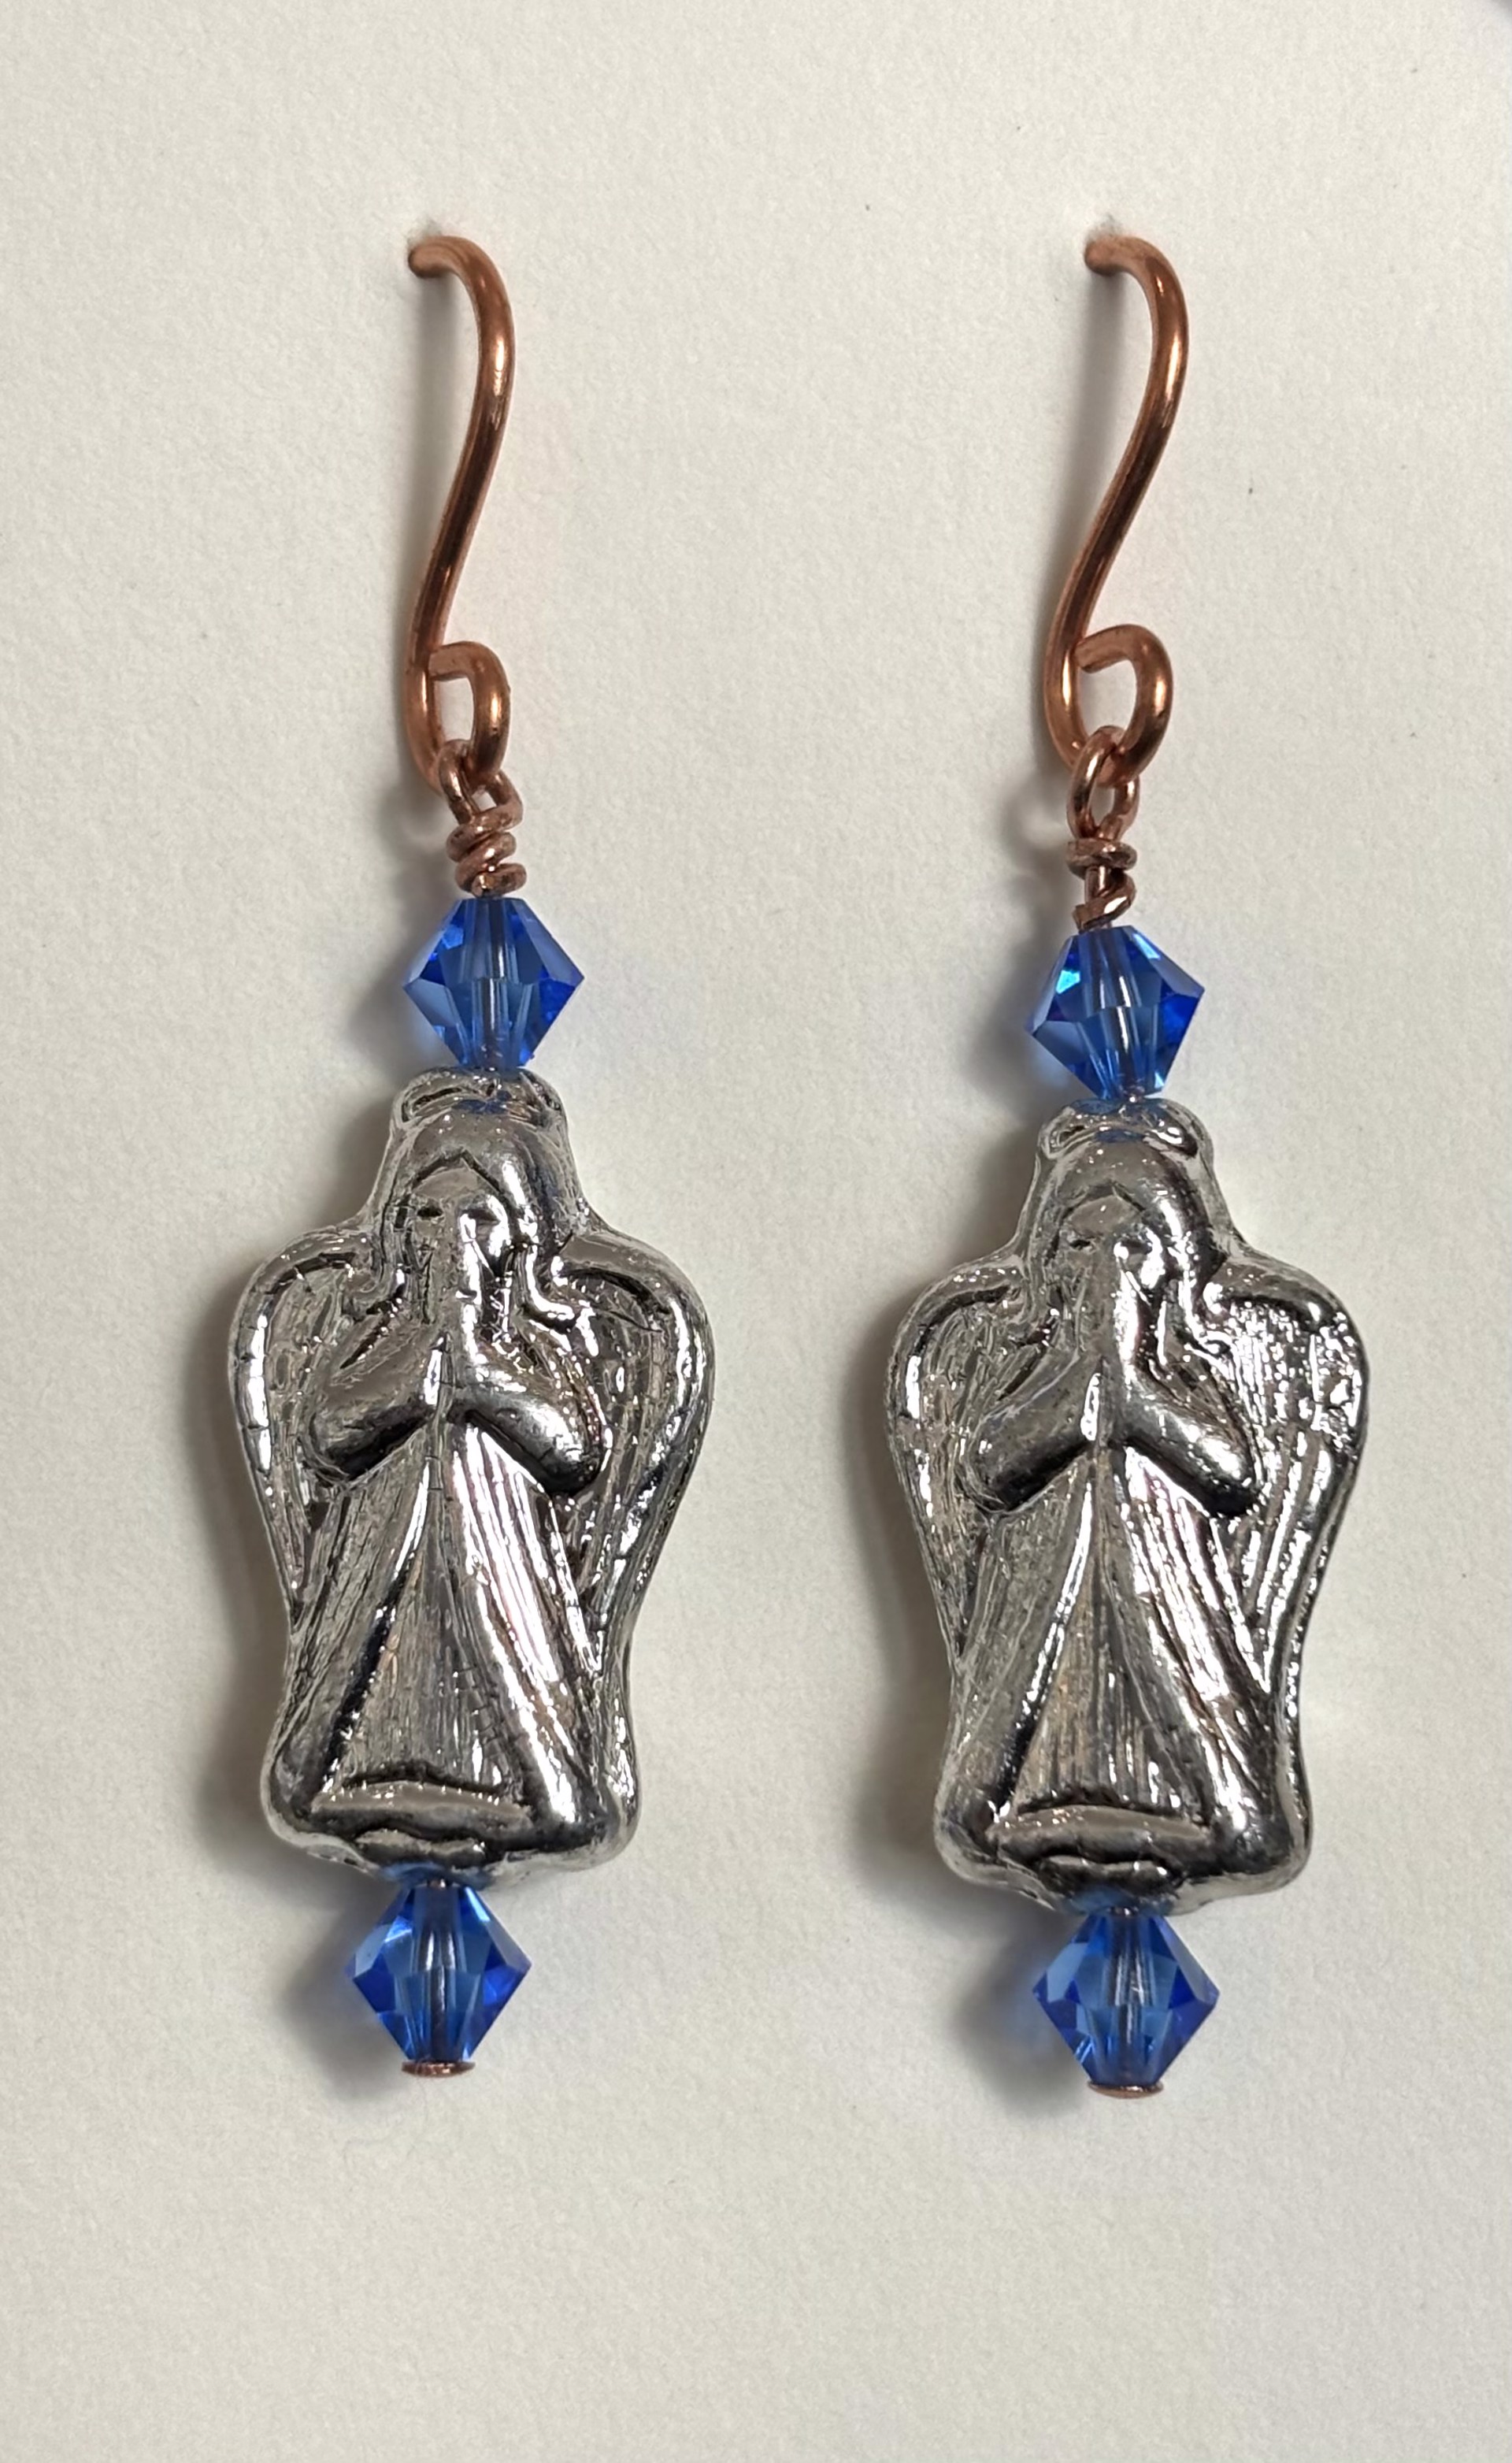 Angel and Blue Crystal Earrings by Emelie Hebert